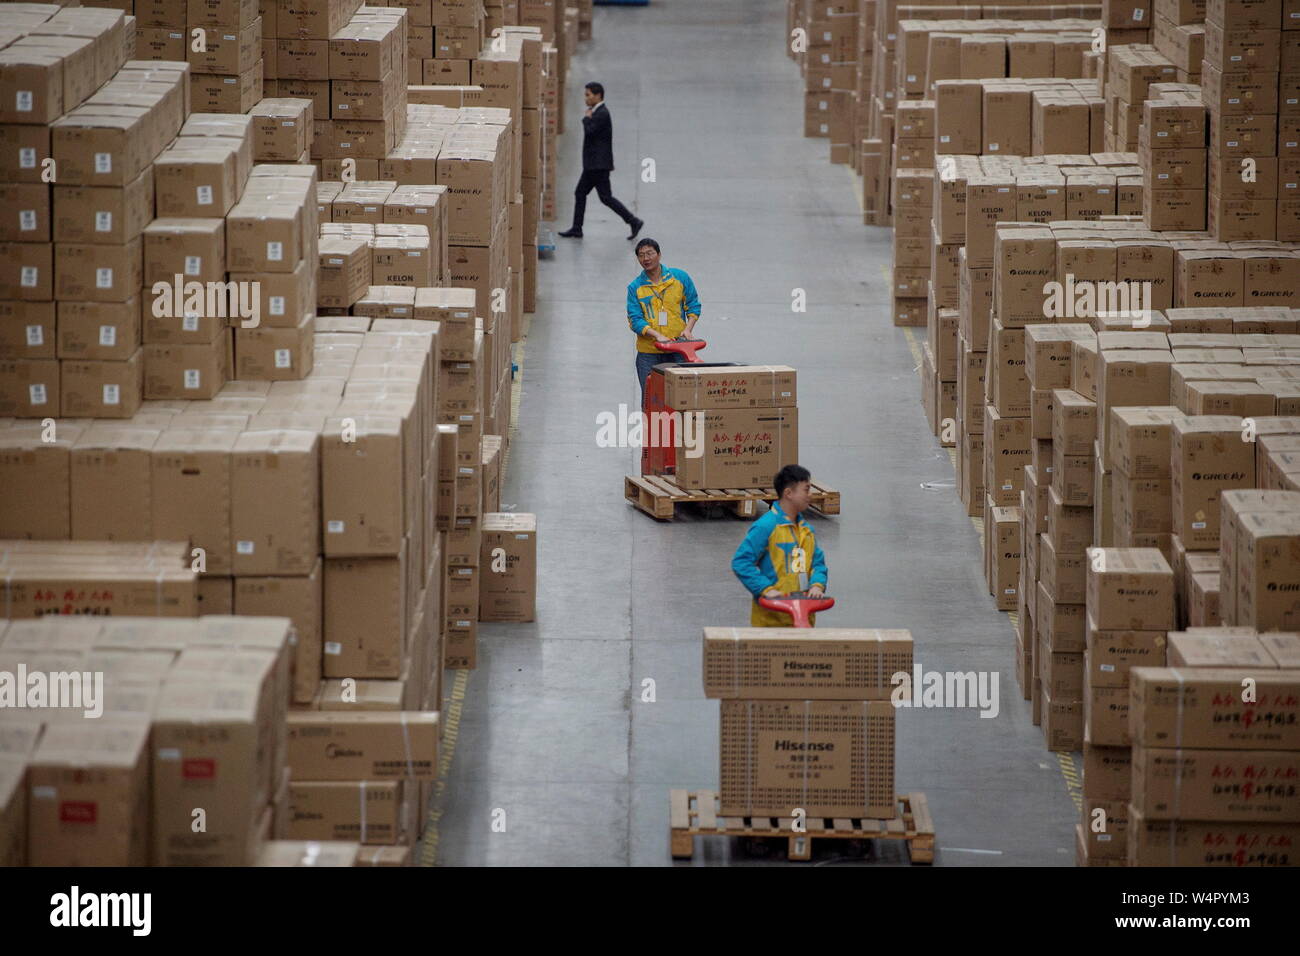 --FILE--travailleurs chinois du travail à une base logistique des e-commerce détaillant Suning Group, au cours de la journée du 11 novembre des célibataires' shopping spree ou 1 Banque D'Images